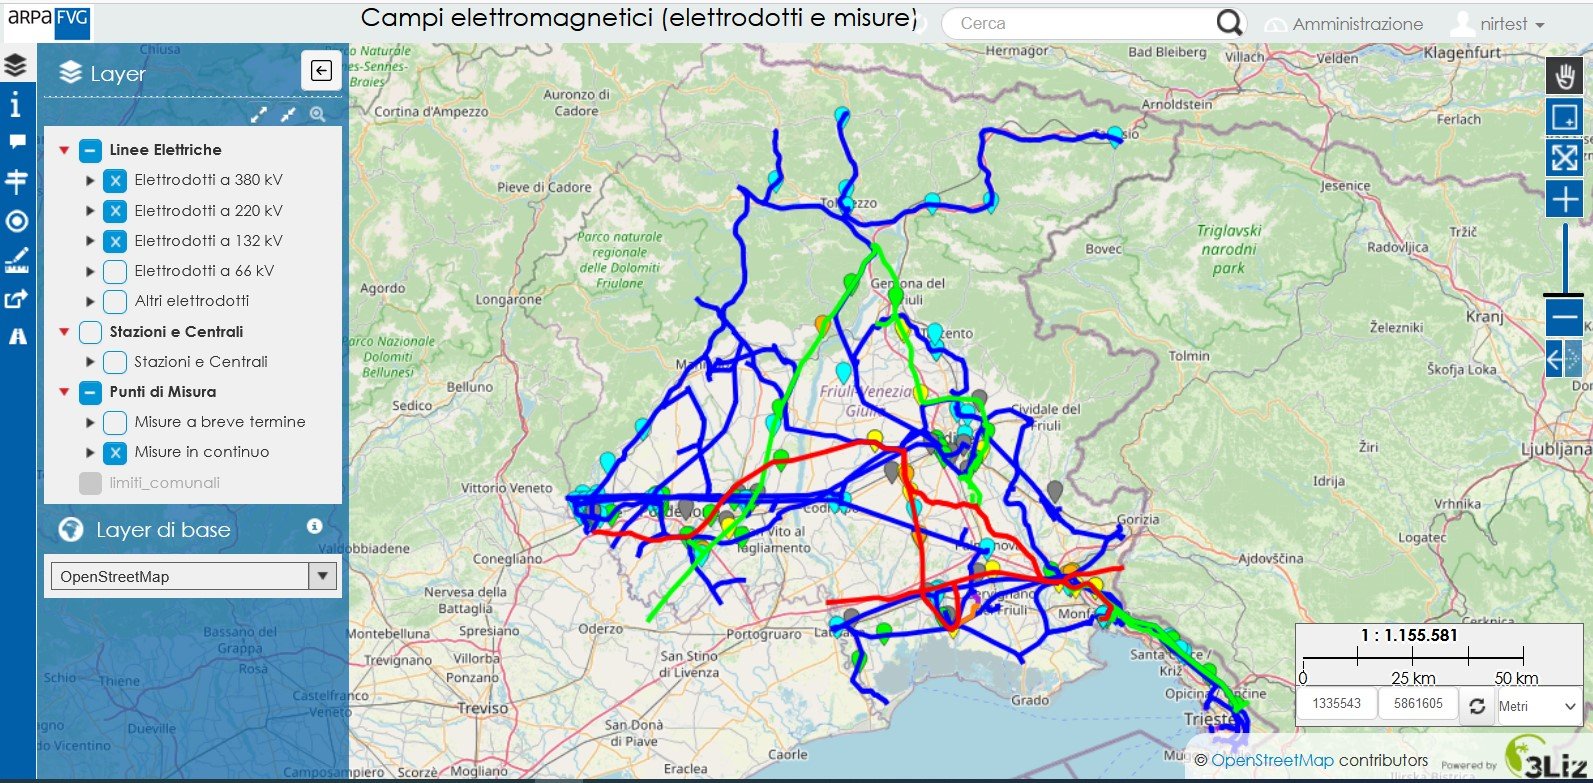 mappa campi elettromagnetici (elettrodotti e misure) in fvg - eplora la mappa interattiva